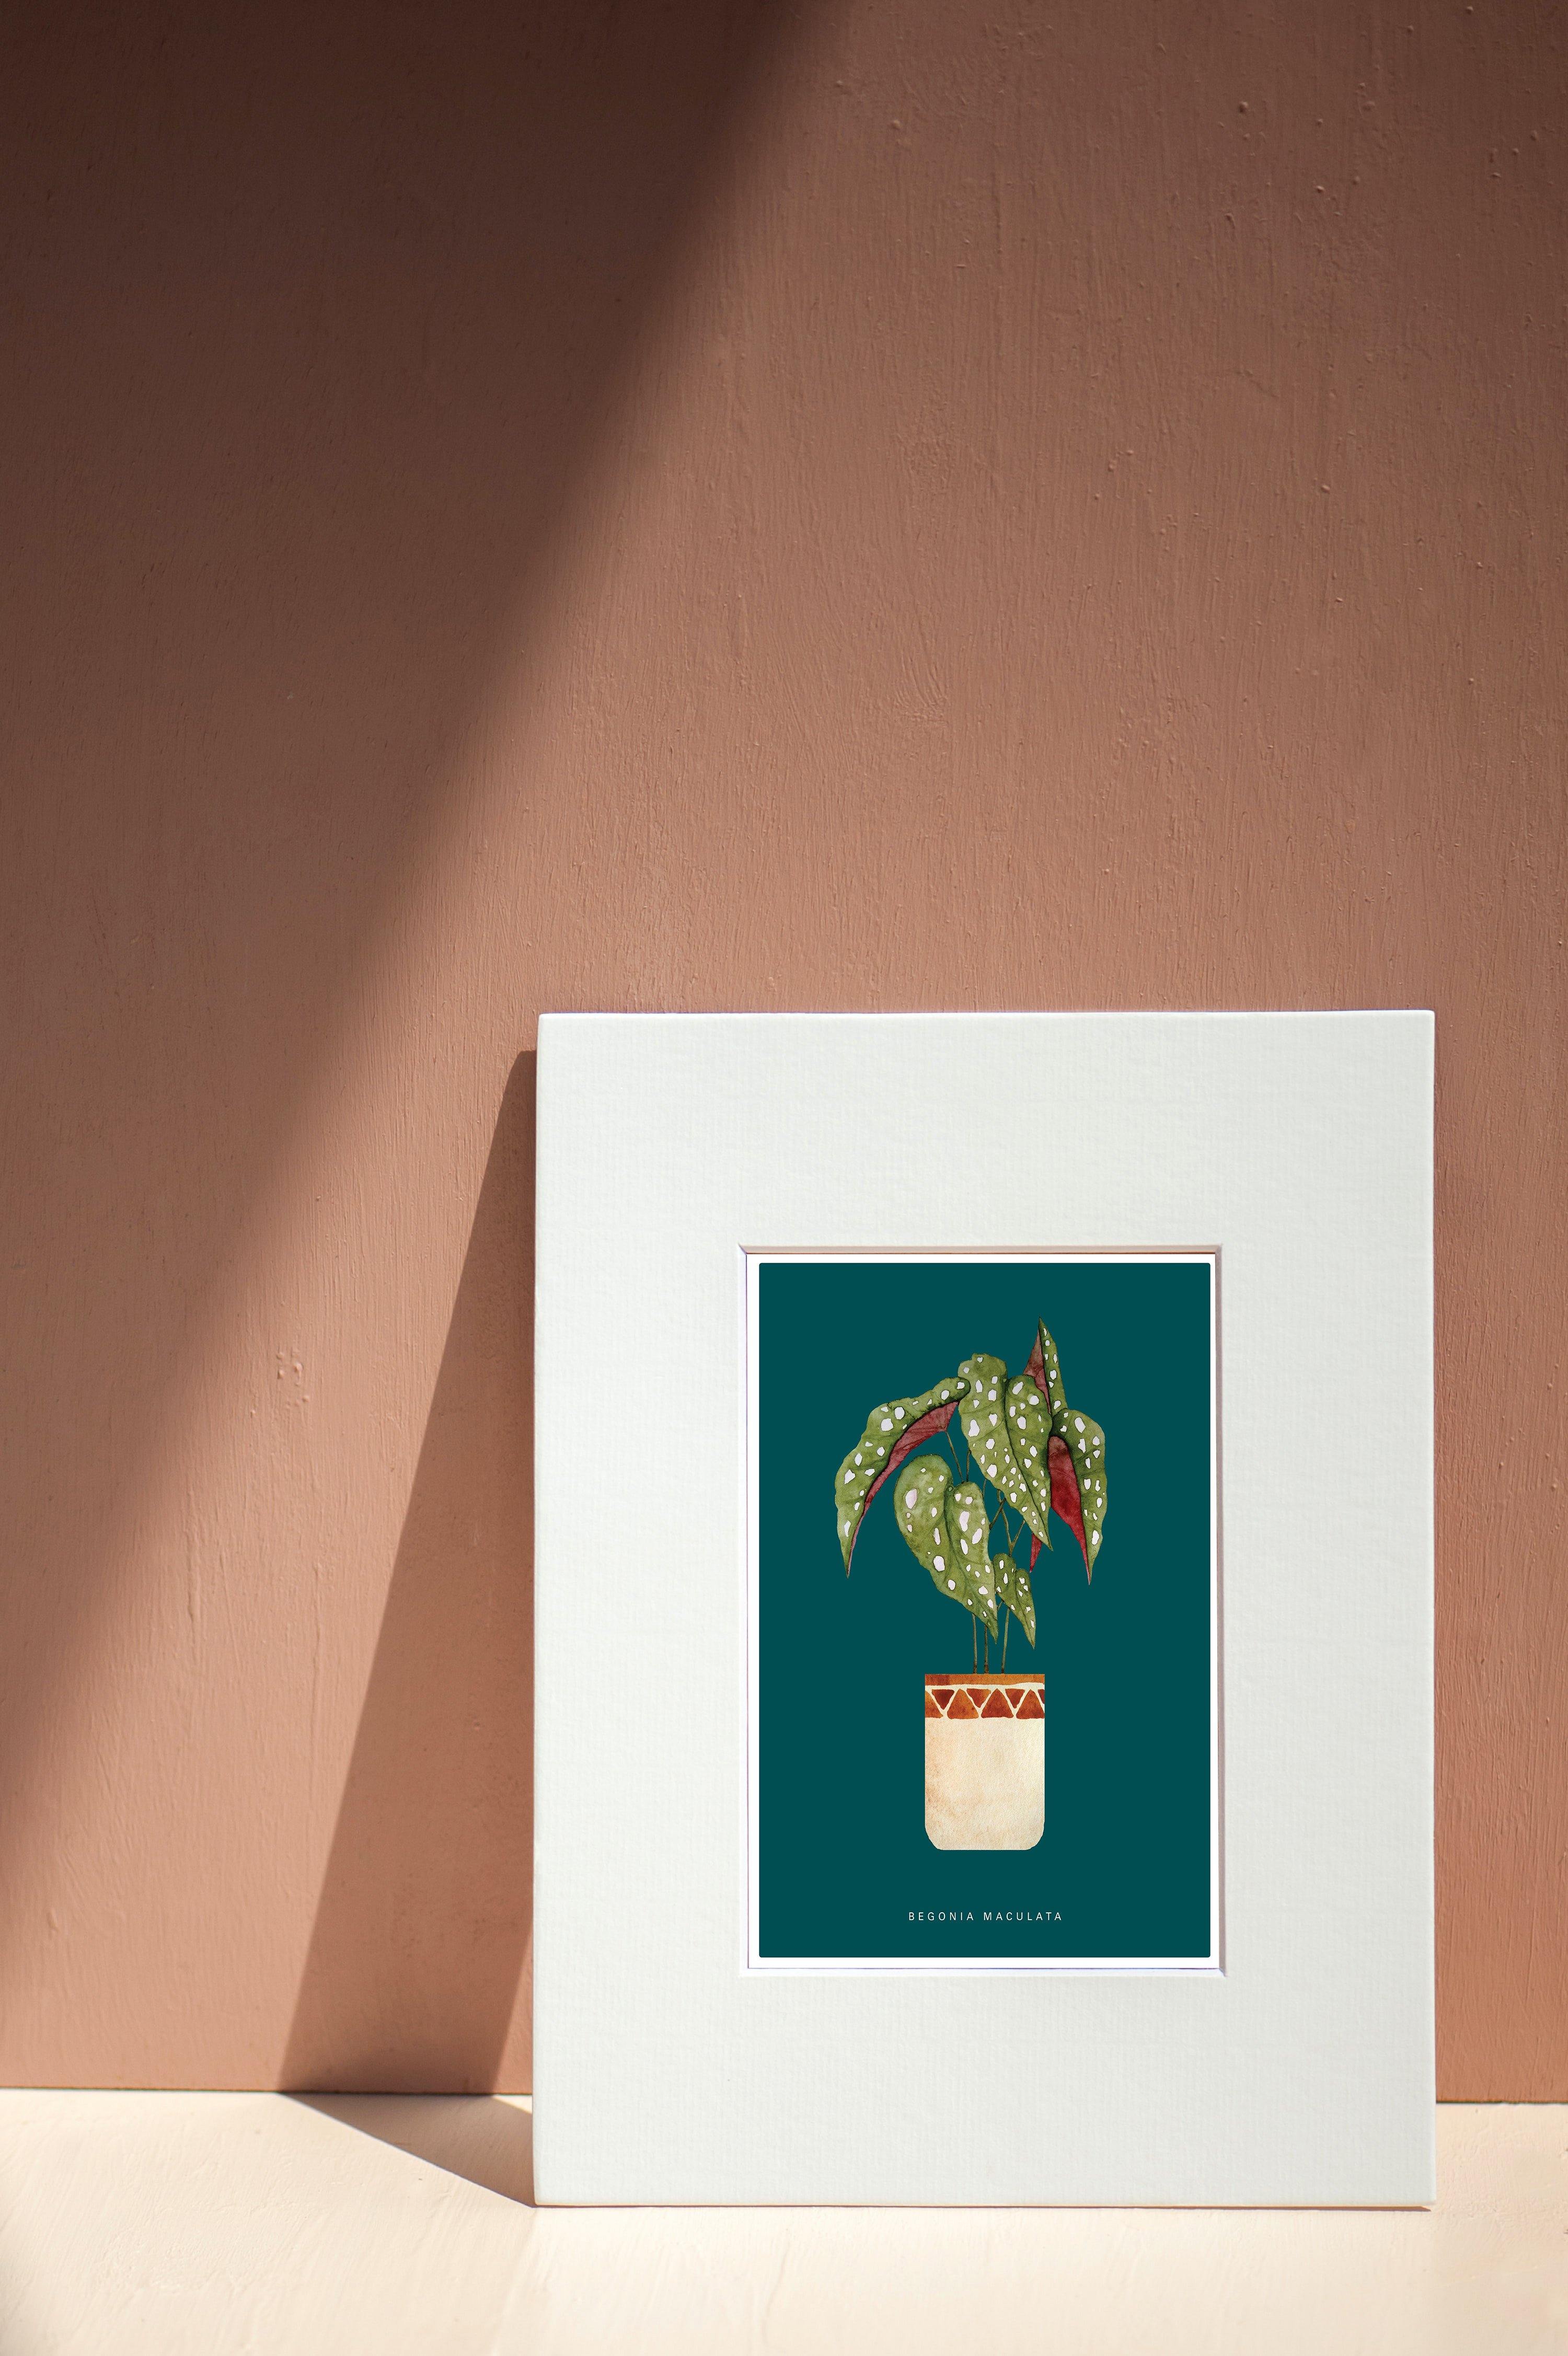 Buy online Premium Quality Begonia Maculata Watercolor Art Print - Urban Jungle Life